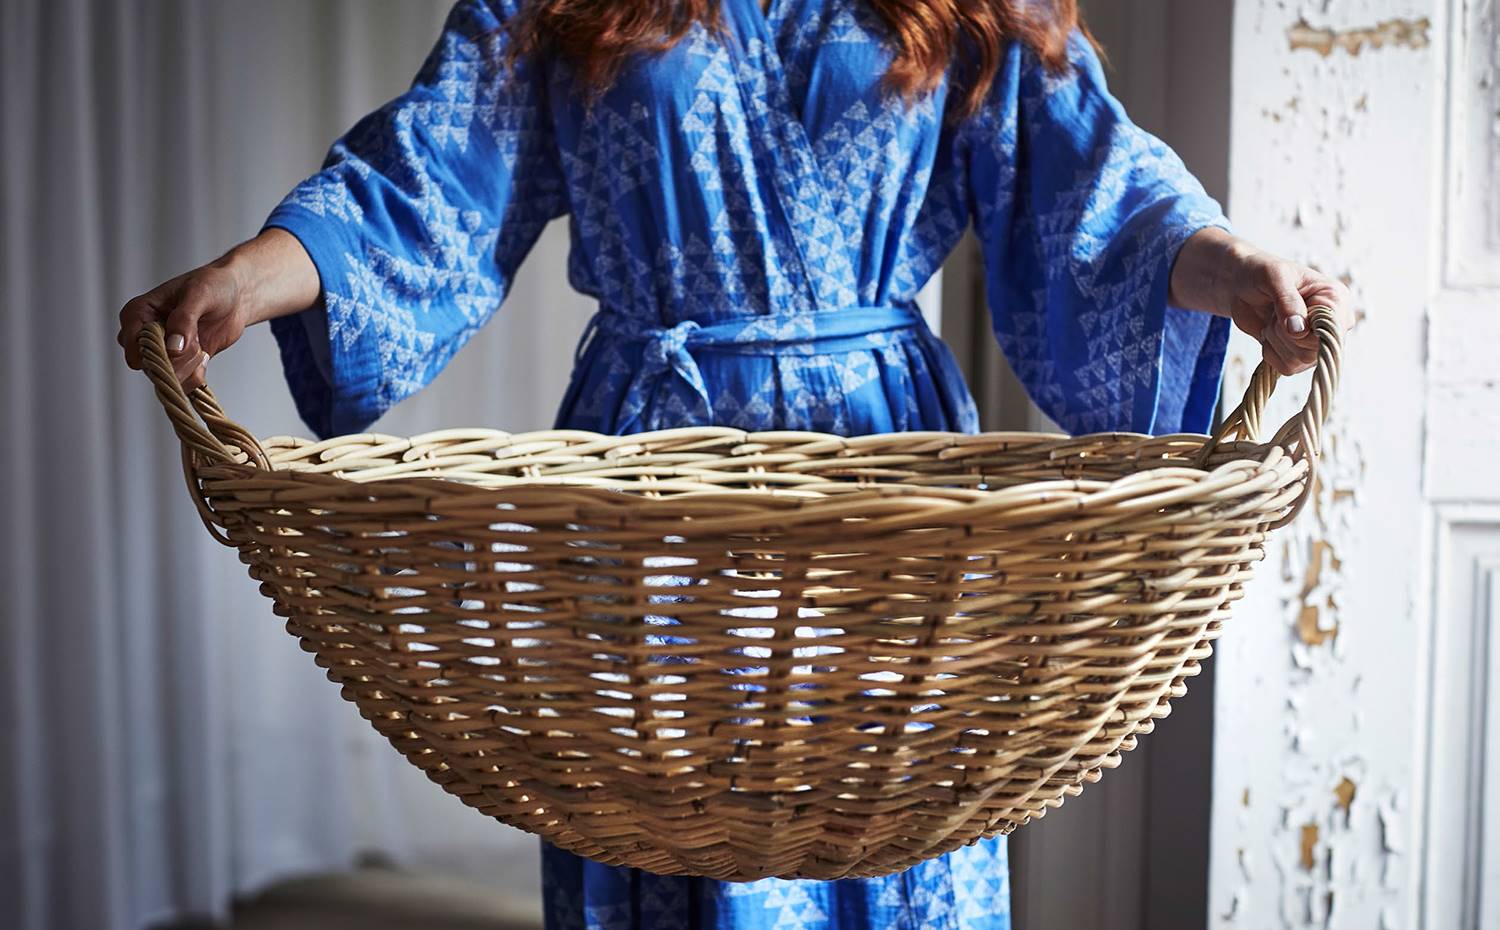 TANKVARD PR kit V2-1. Kimono jacquard mezcla de algodón y lino de 25€ y cesto con asas de ratán, 29,99€.